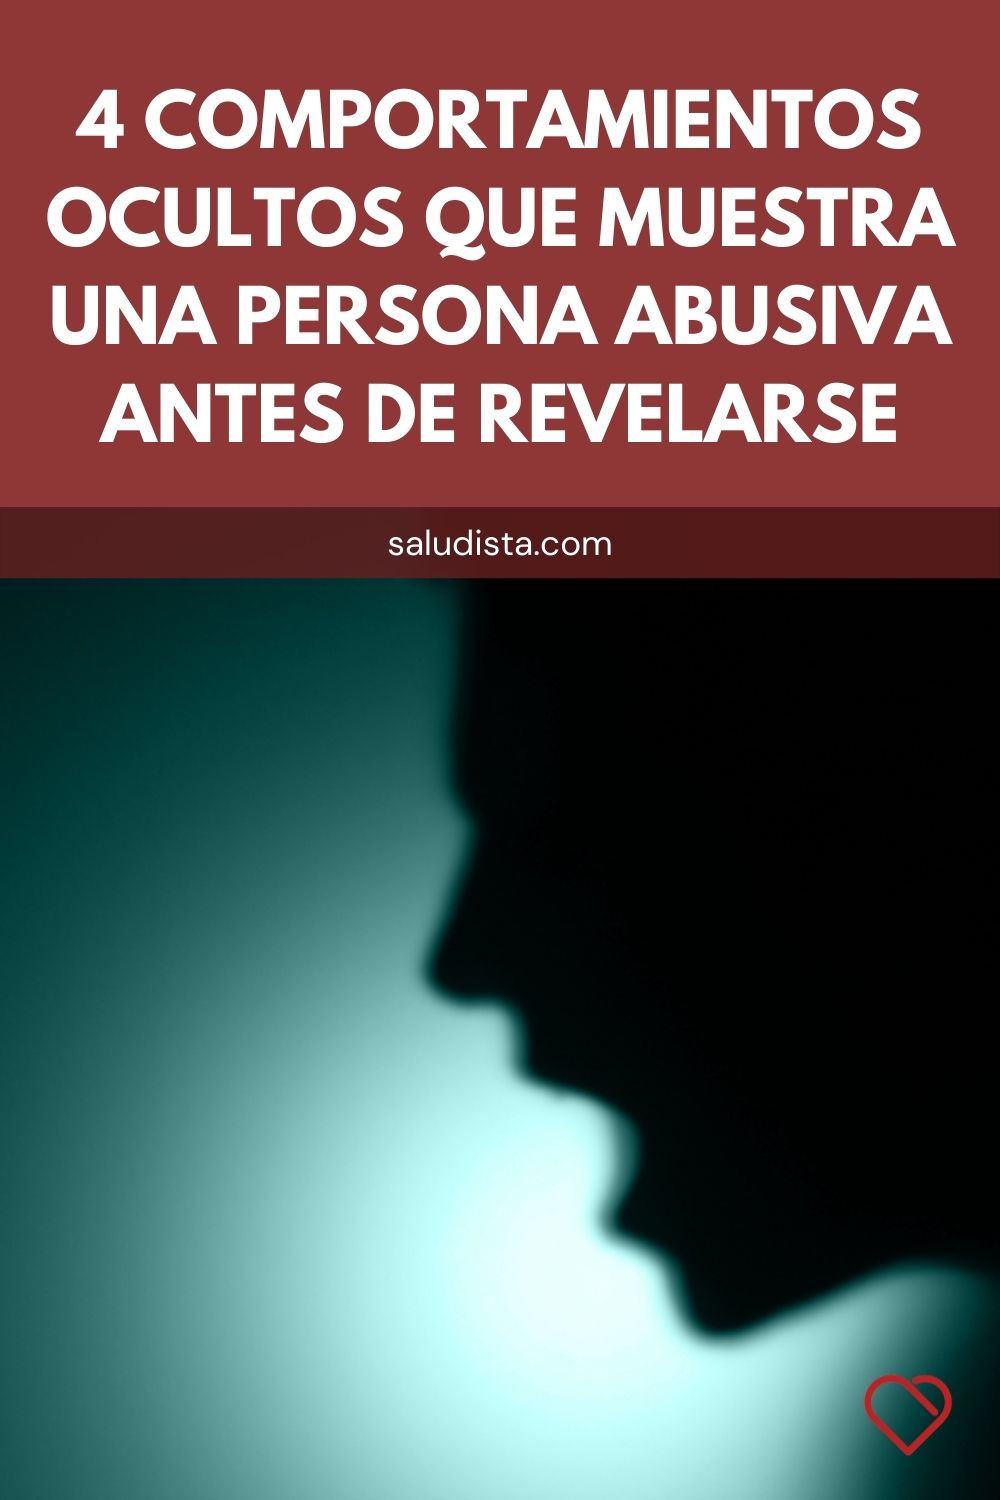 4 comportamientos ocultos que muestra una persona abusiva antes de revelarse